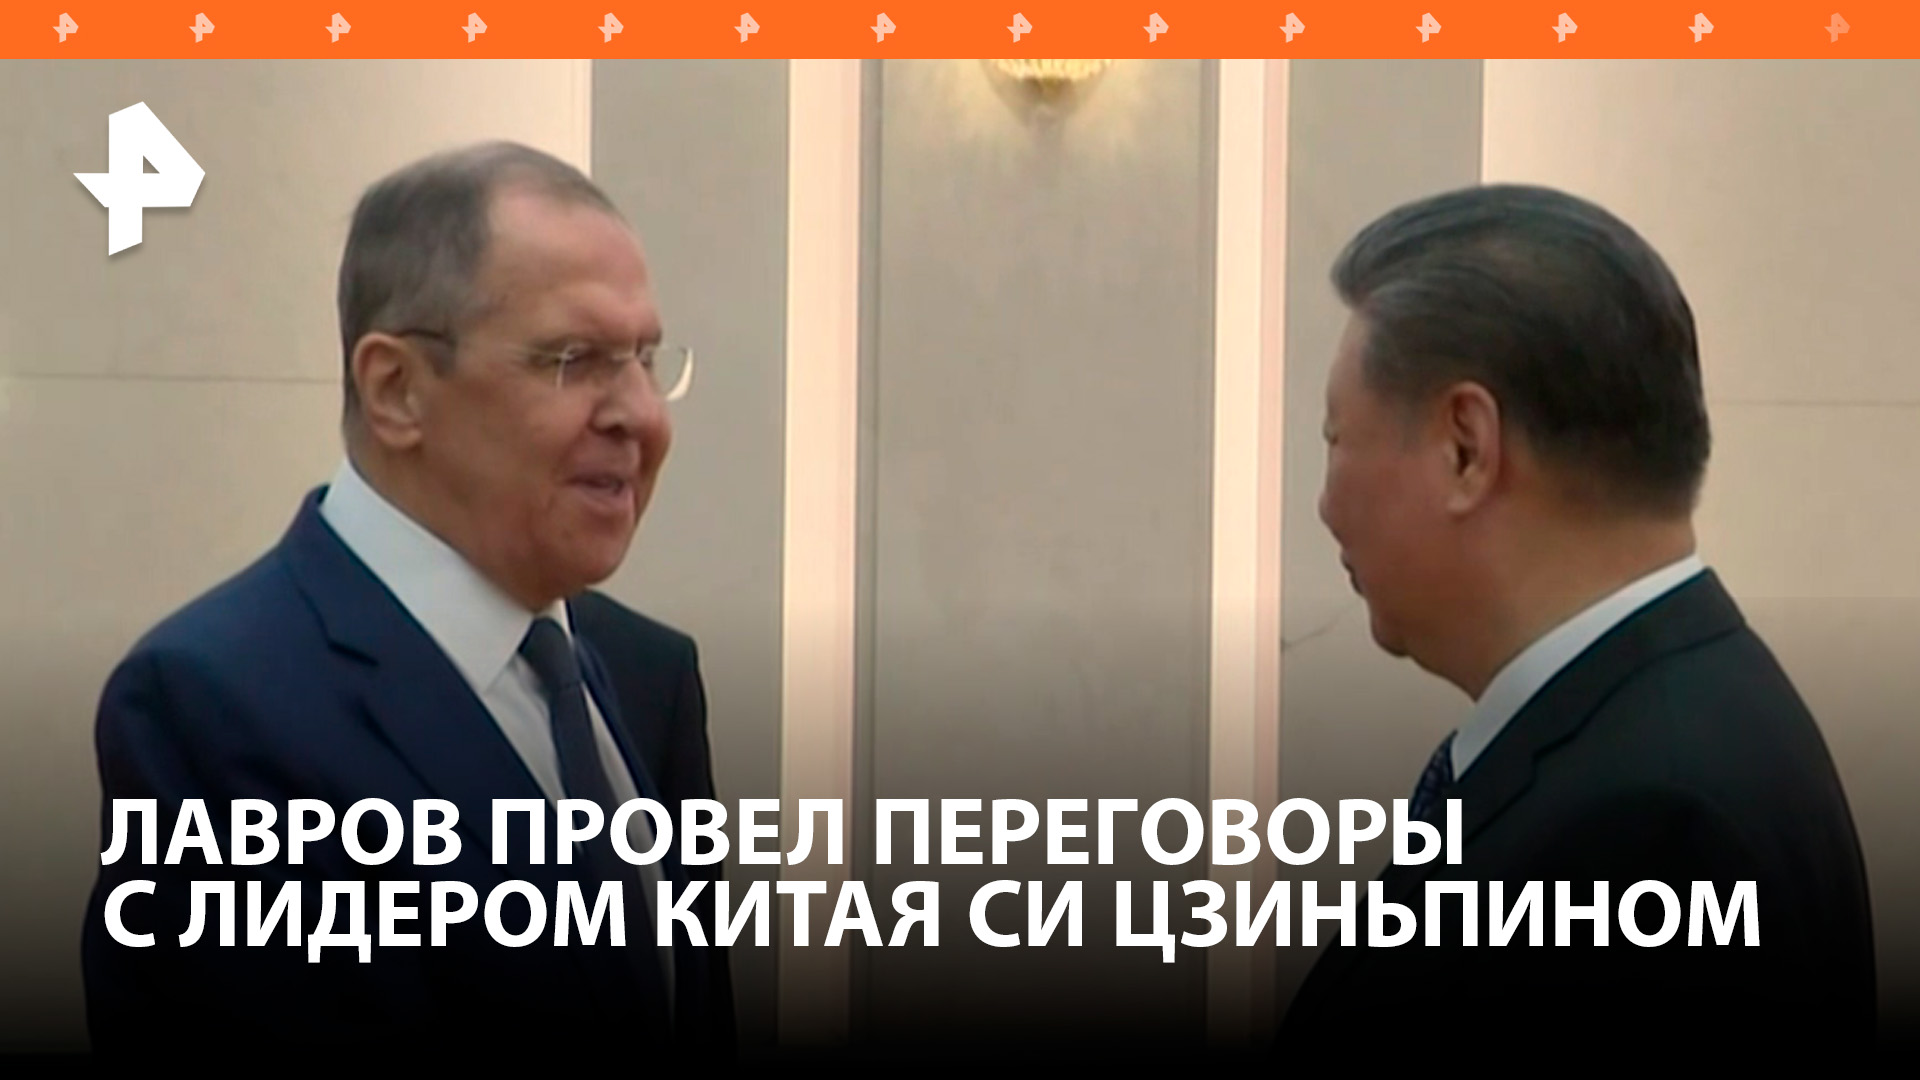 Лавров на встрече выразил Си Цзиньпину высочайшую оценку РФ успехов Китая под его руководством / РЕН